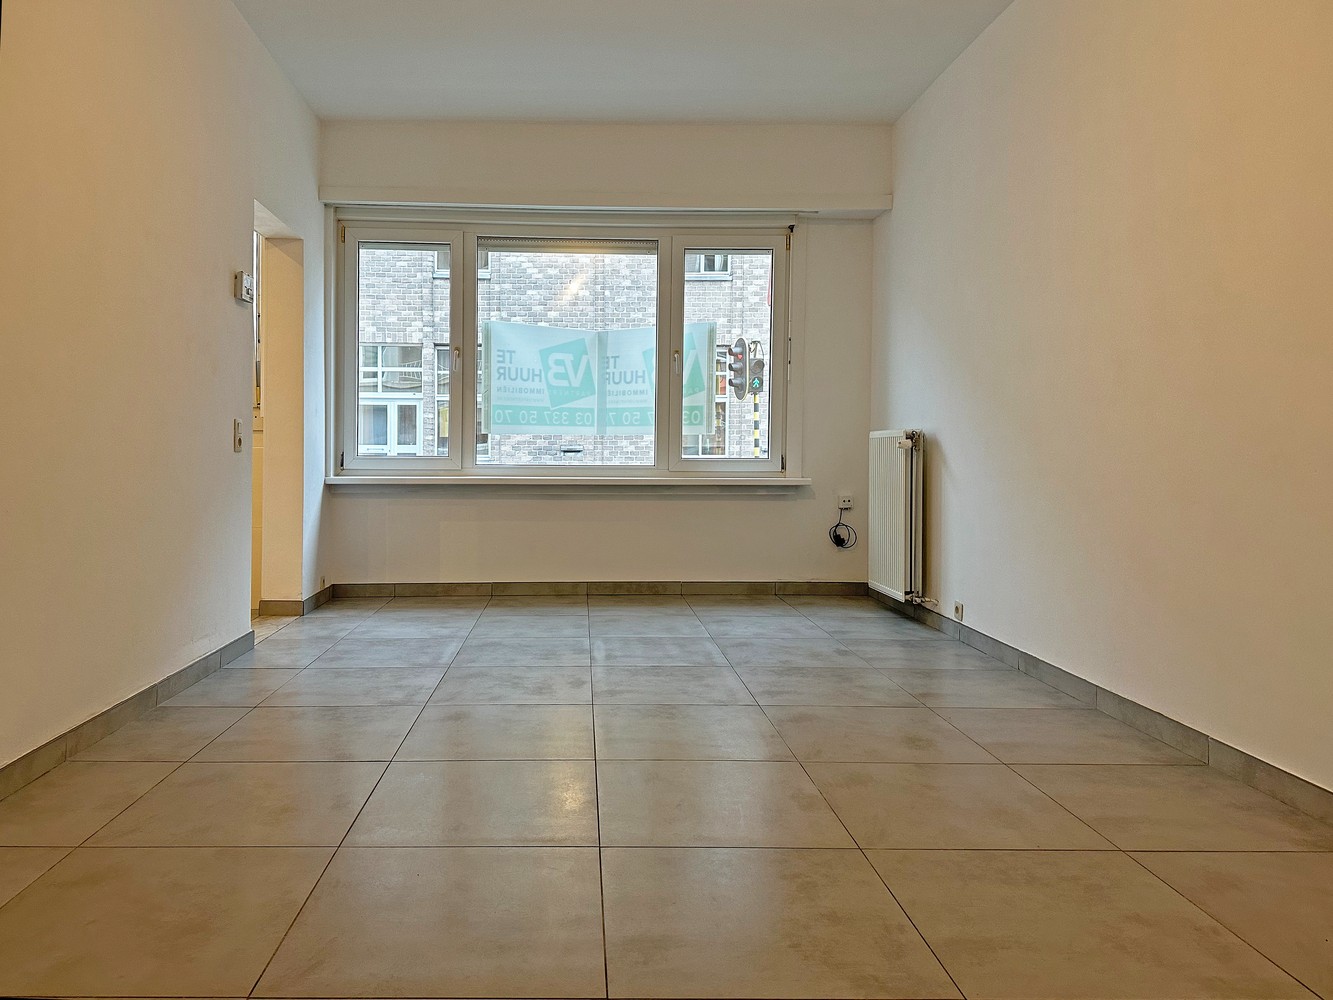 Gelijkvloers appartement met 1 slaapkamer en 1 dressing nabij het centrum van Borsbeek. afbeelding 1